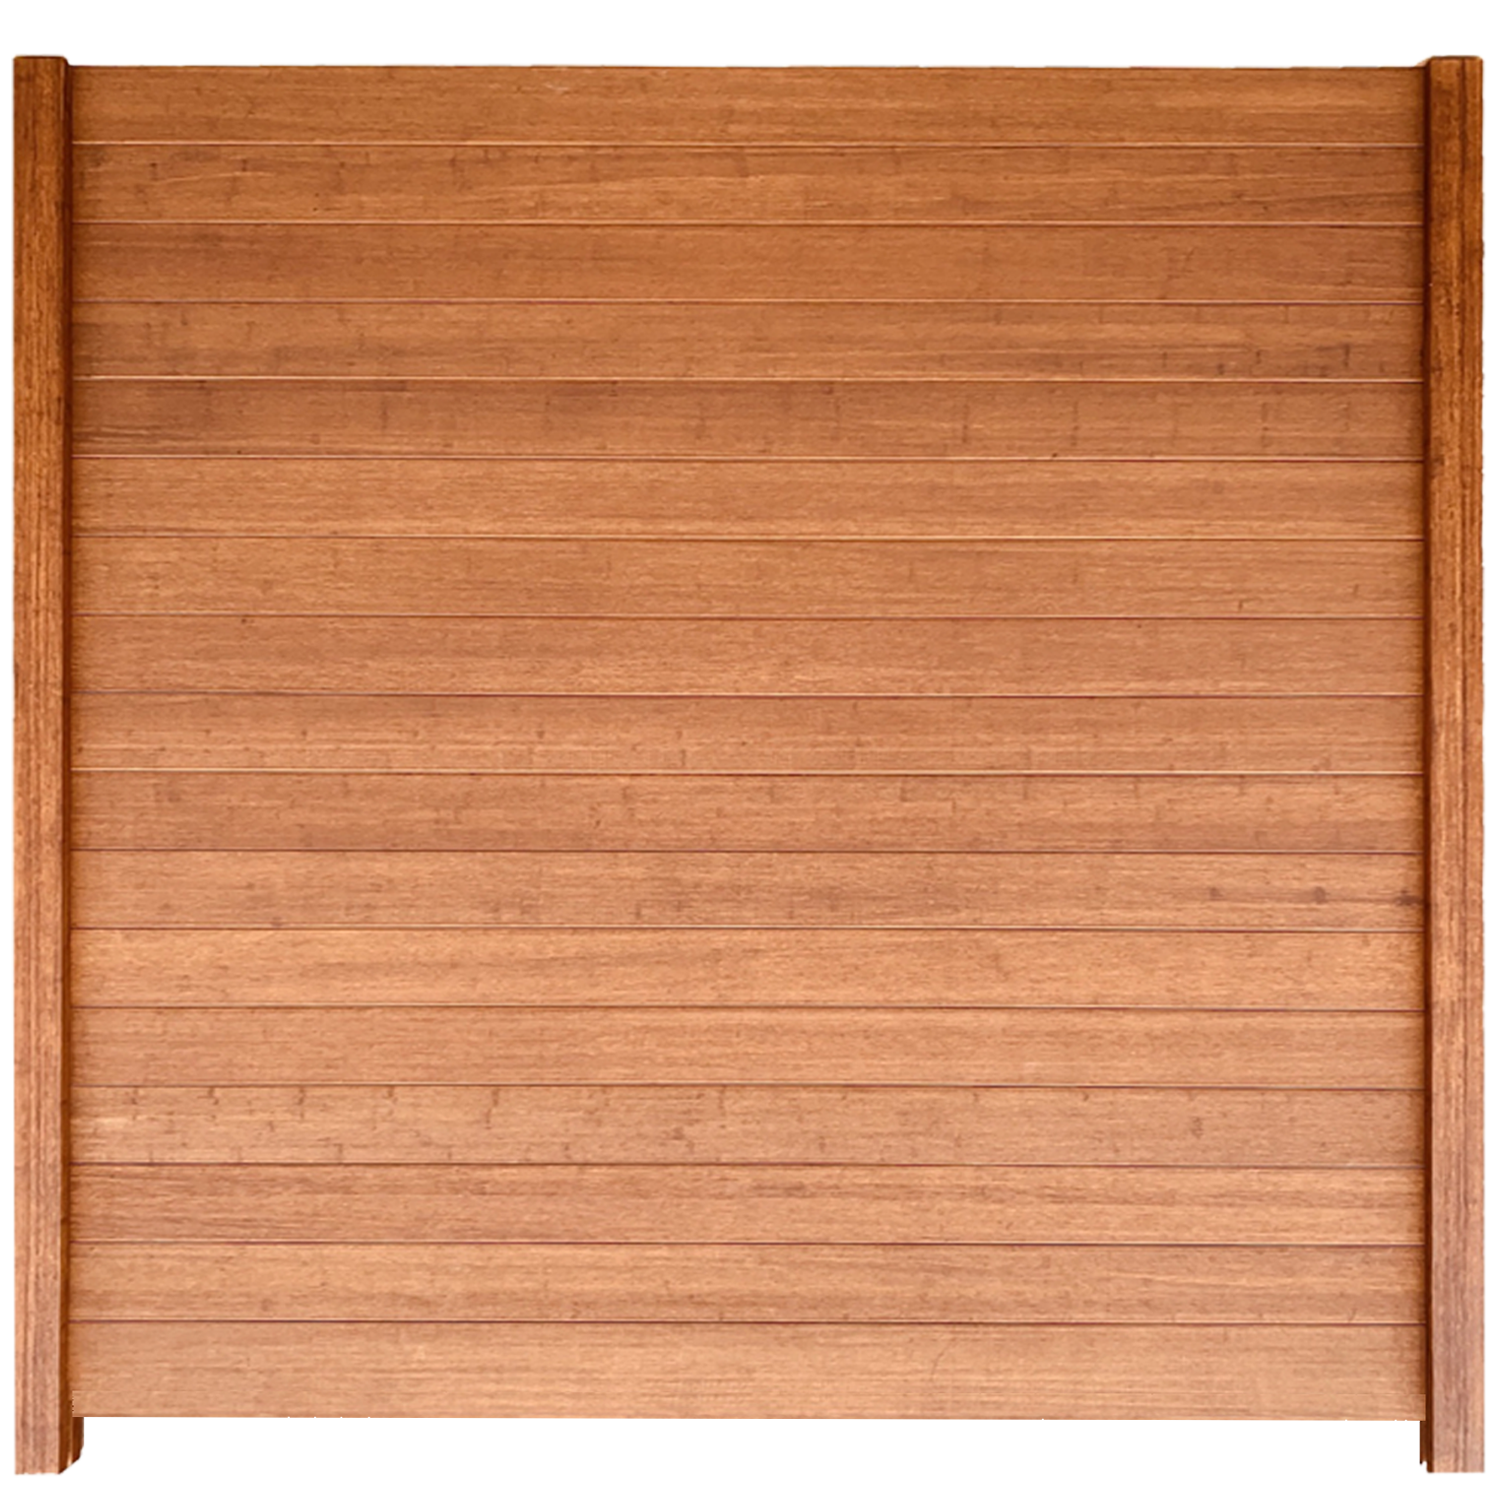 Bambuszaun Nano Top Board   